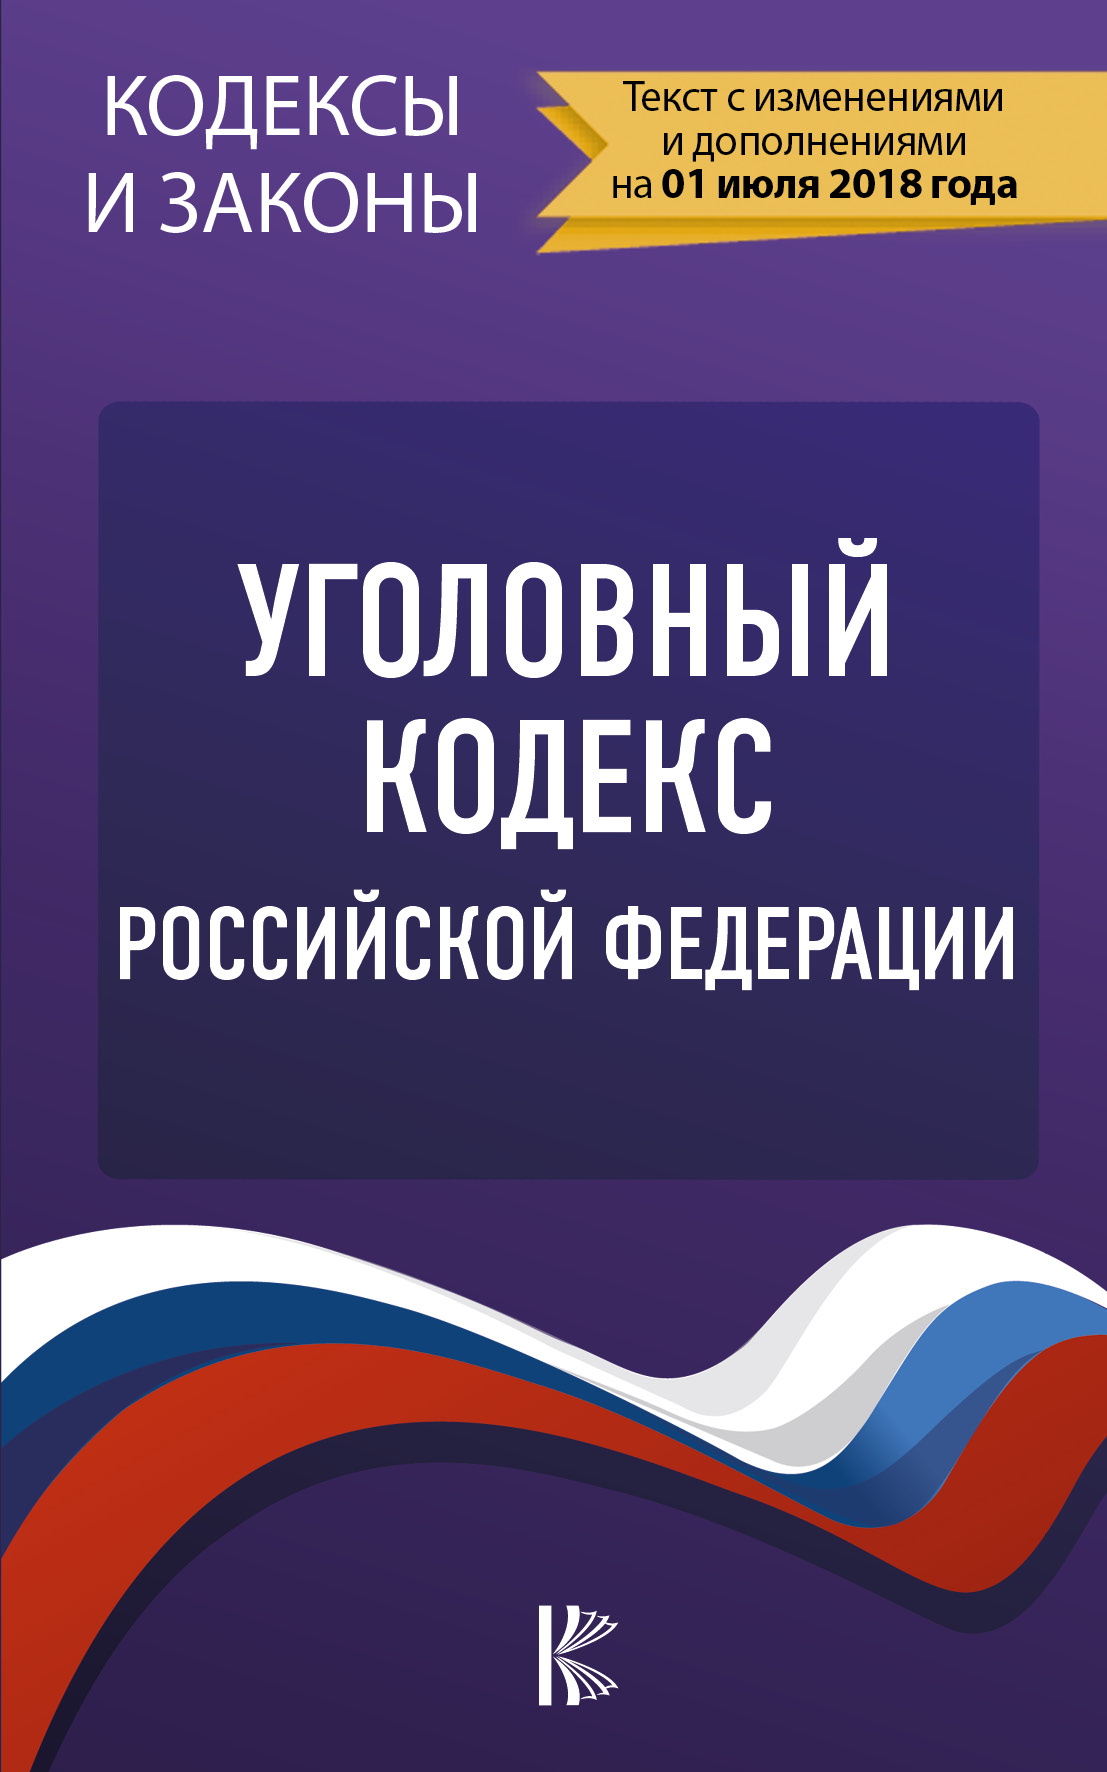  Уголовный Кодекс Российской Федерации. По состоянию на 01.07.2018 г. - страница 0